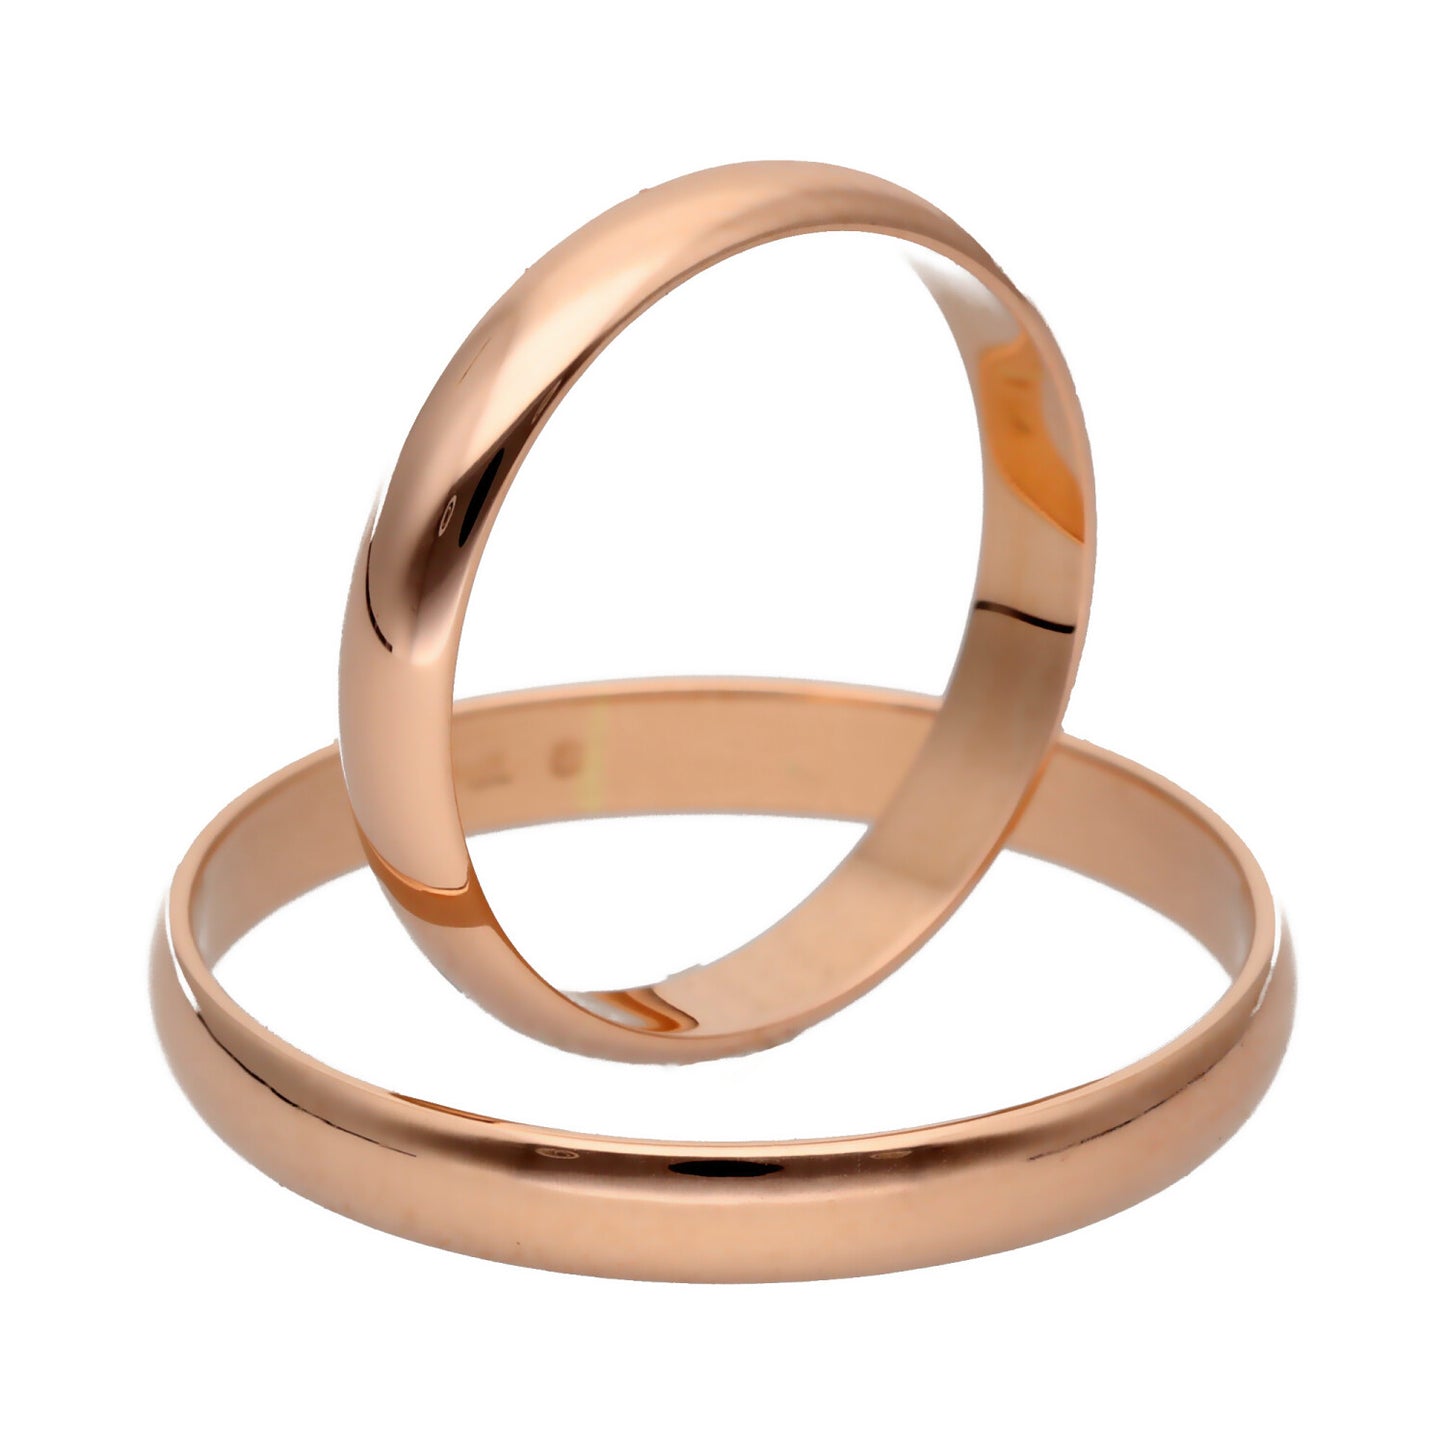 Klasikiniai vestuviniai žiedai 3mm pločio su komfortu vestuviniaiziedai.lt